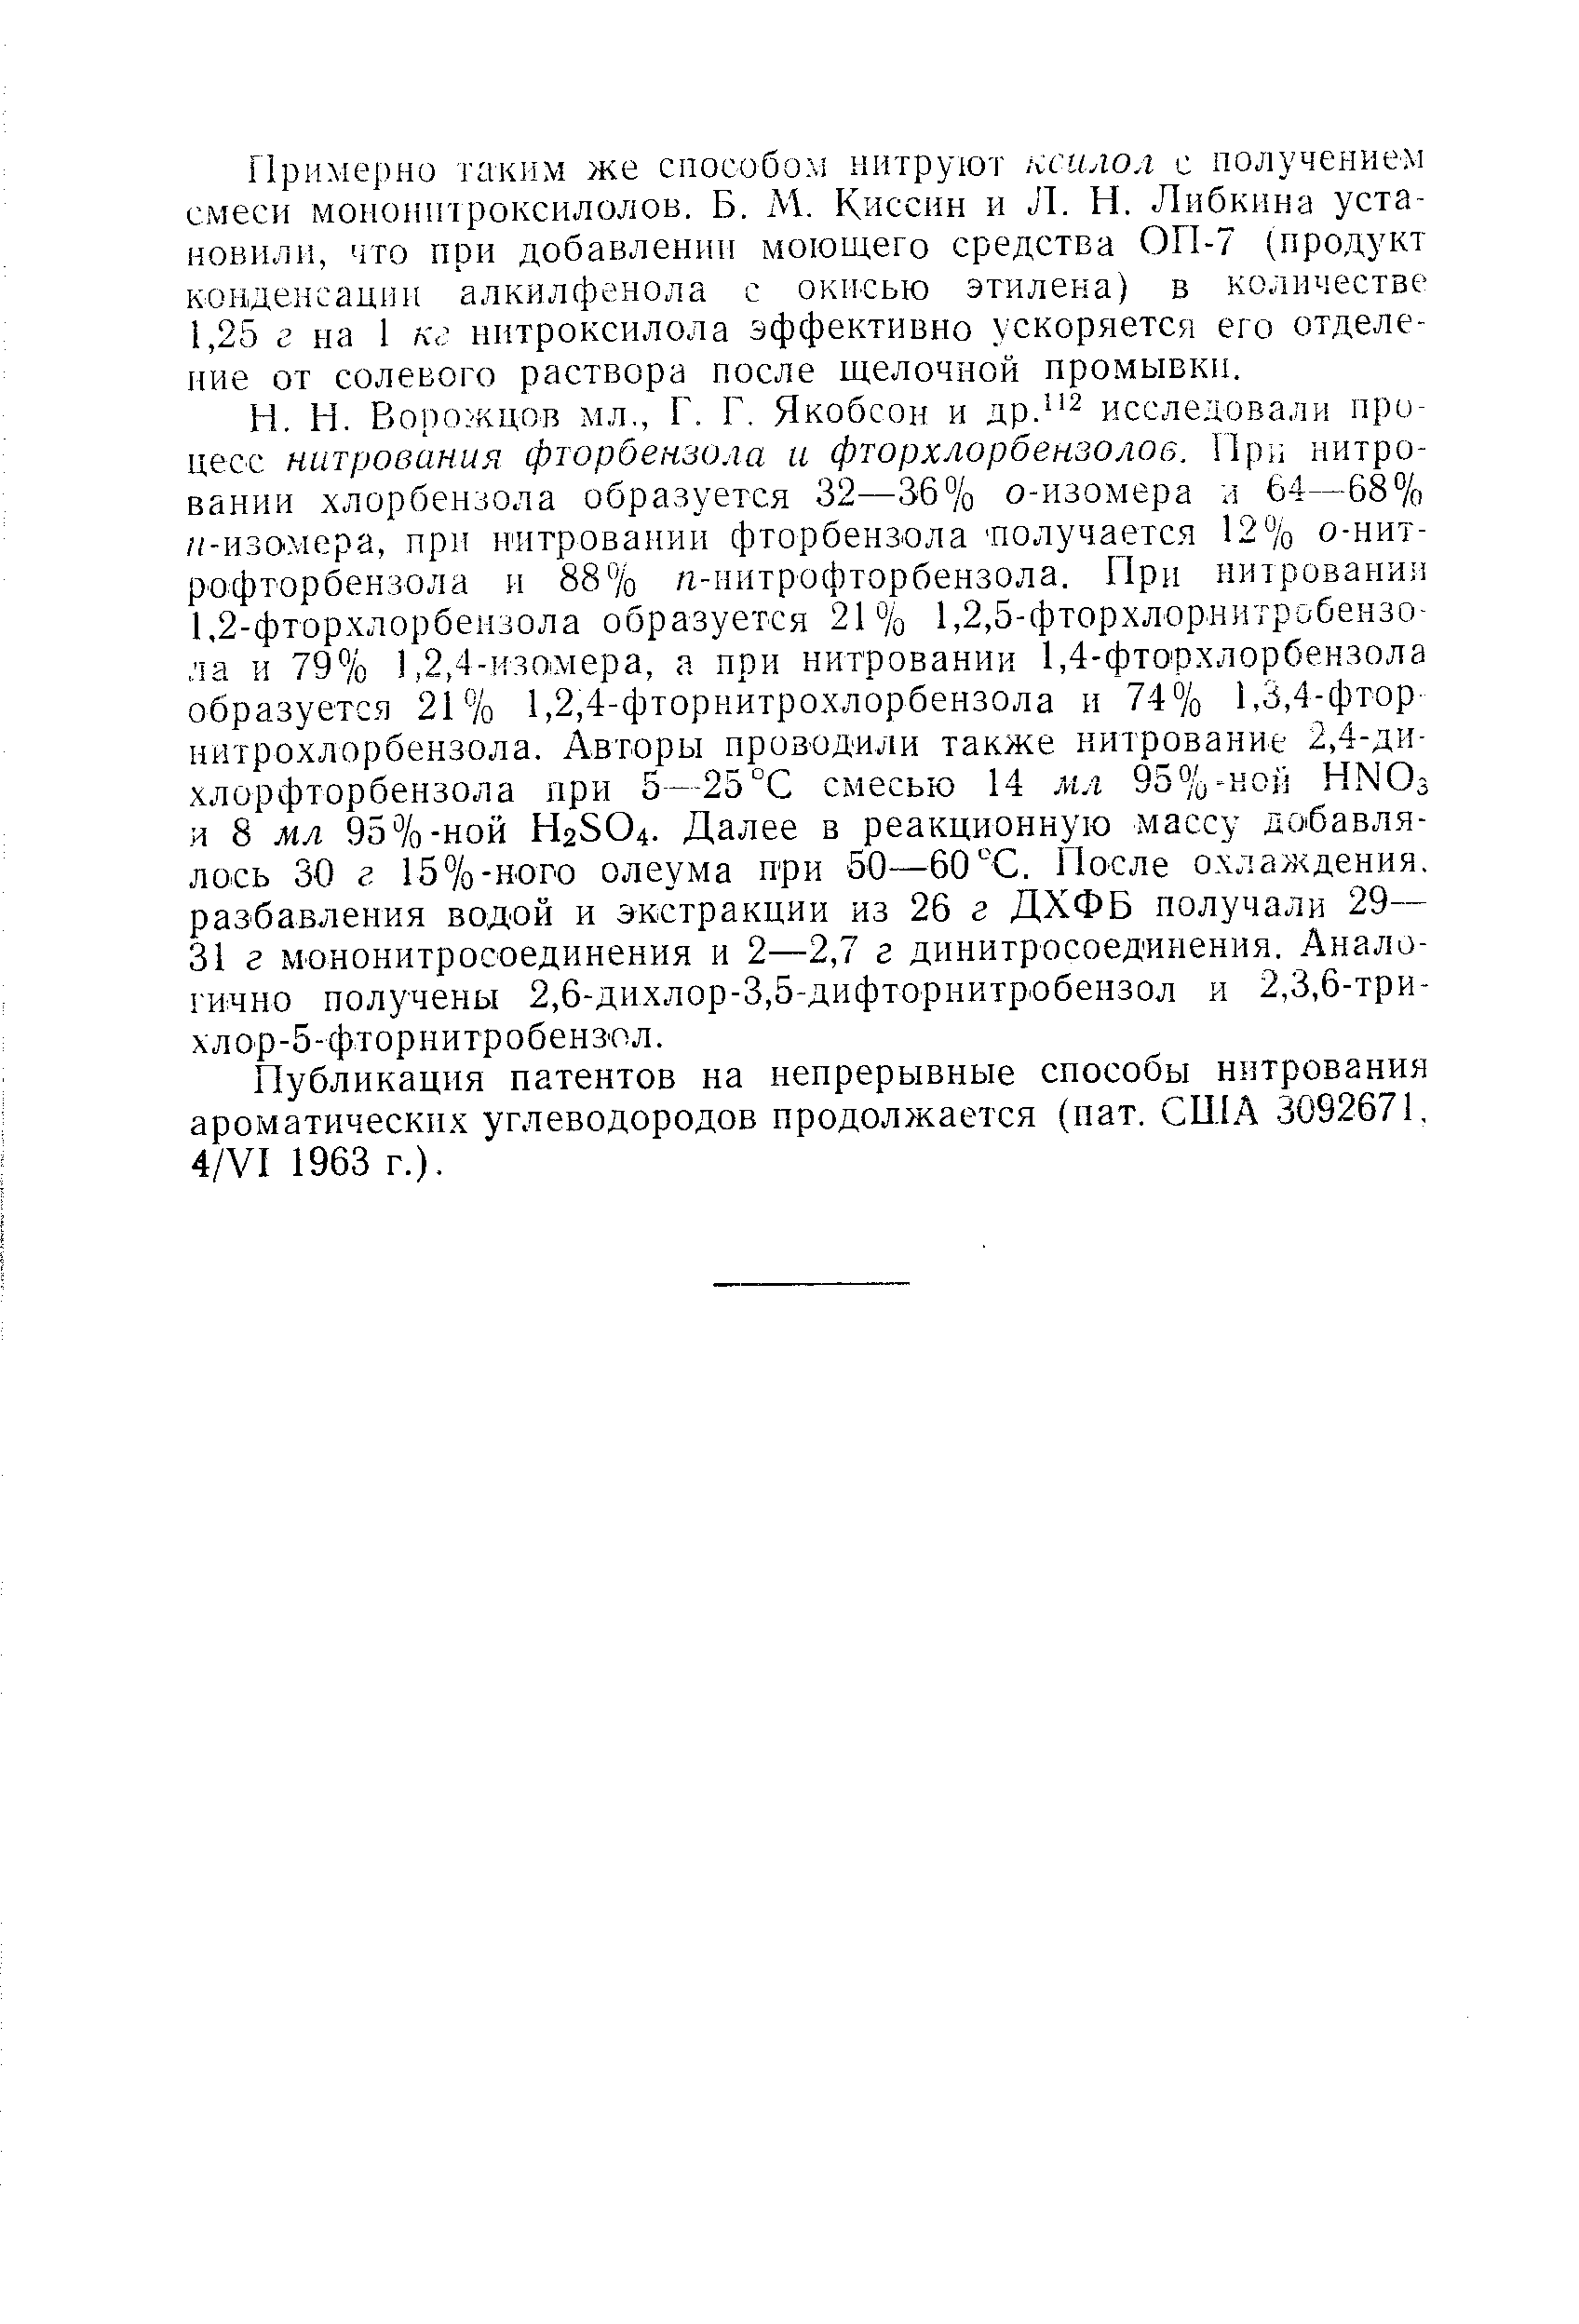 Публикация патентов на непрерывные способы нитрования ароматических углеводородов продолжается (пат. США 3092671, 4/VI 1963 г.).